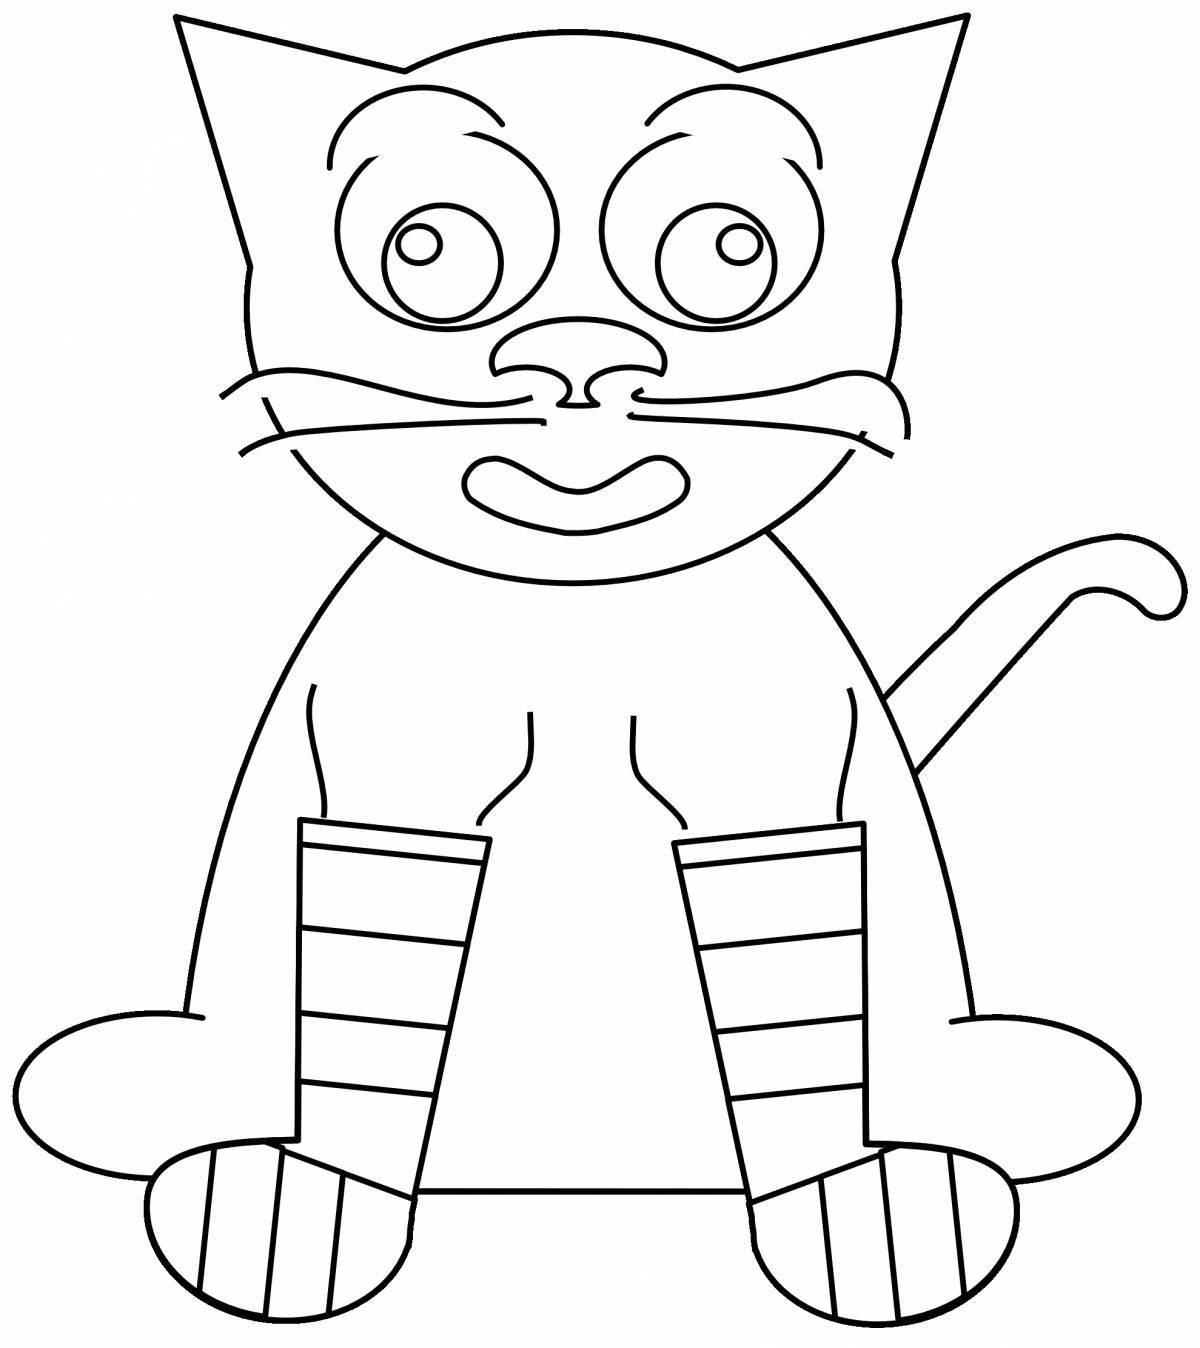 Funny coloring cartooncat